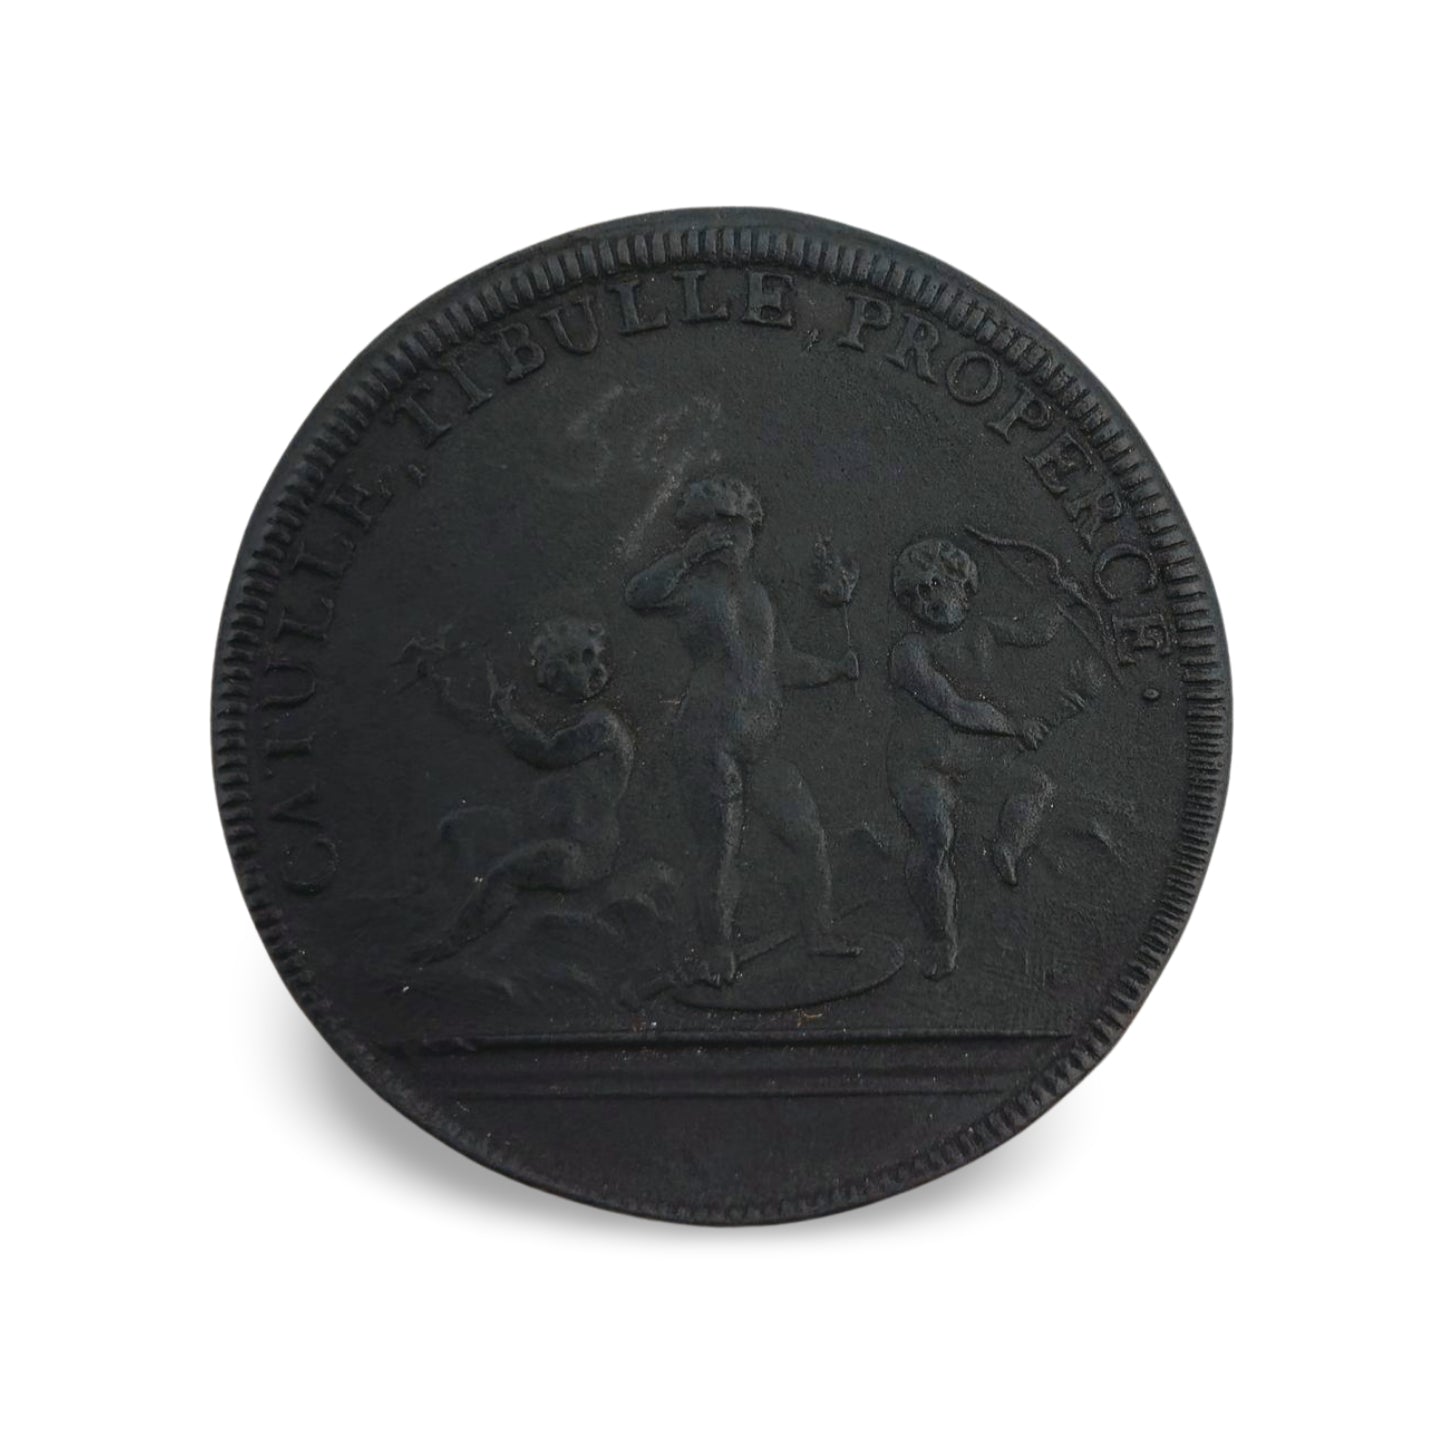 Dassier Medal: OVIDE TERENCE